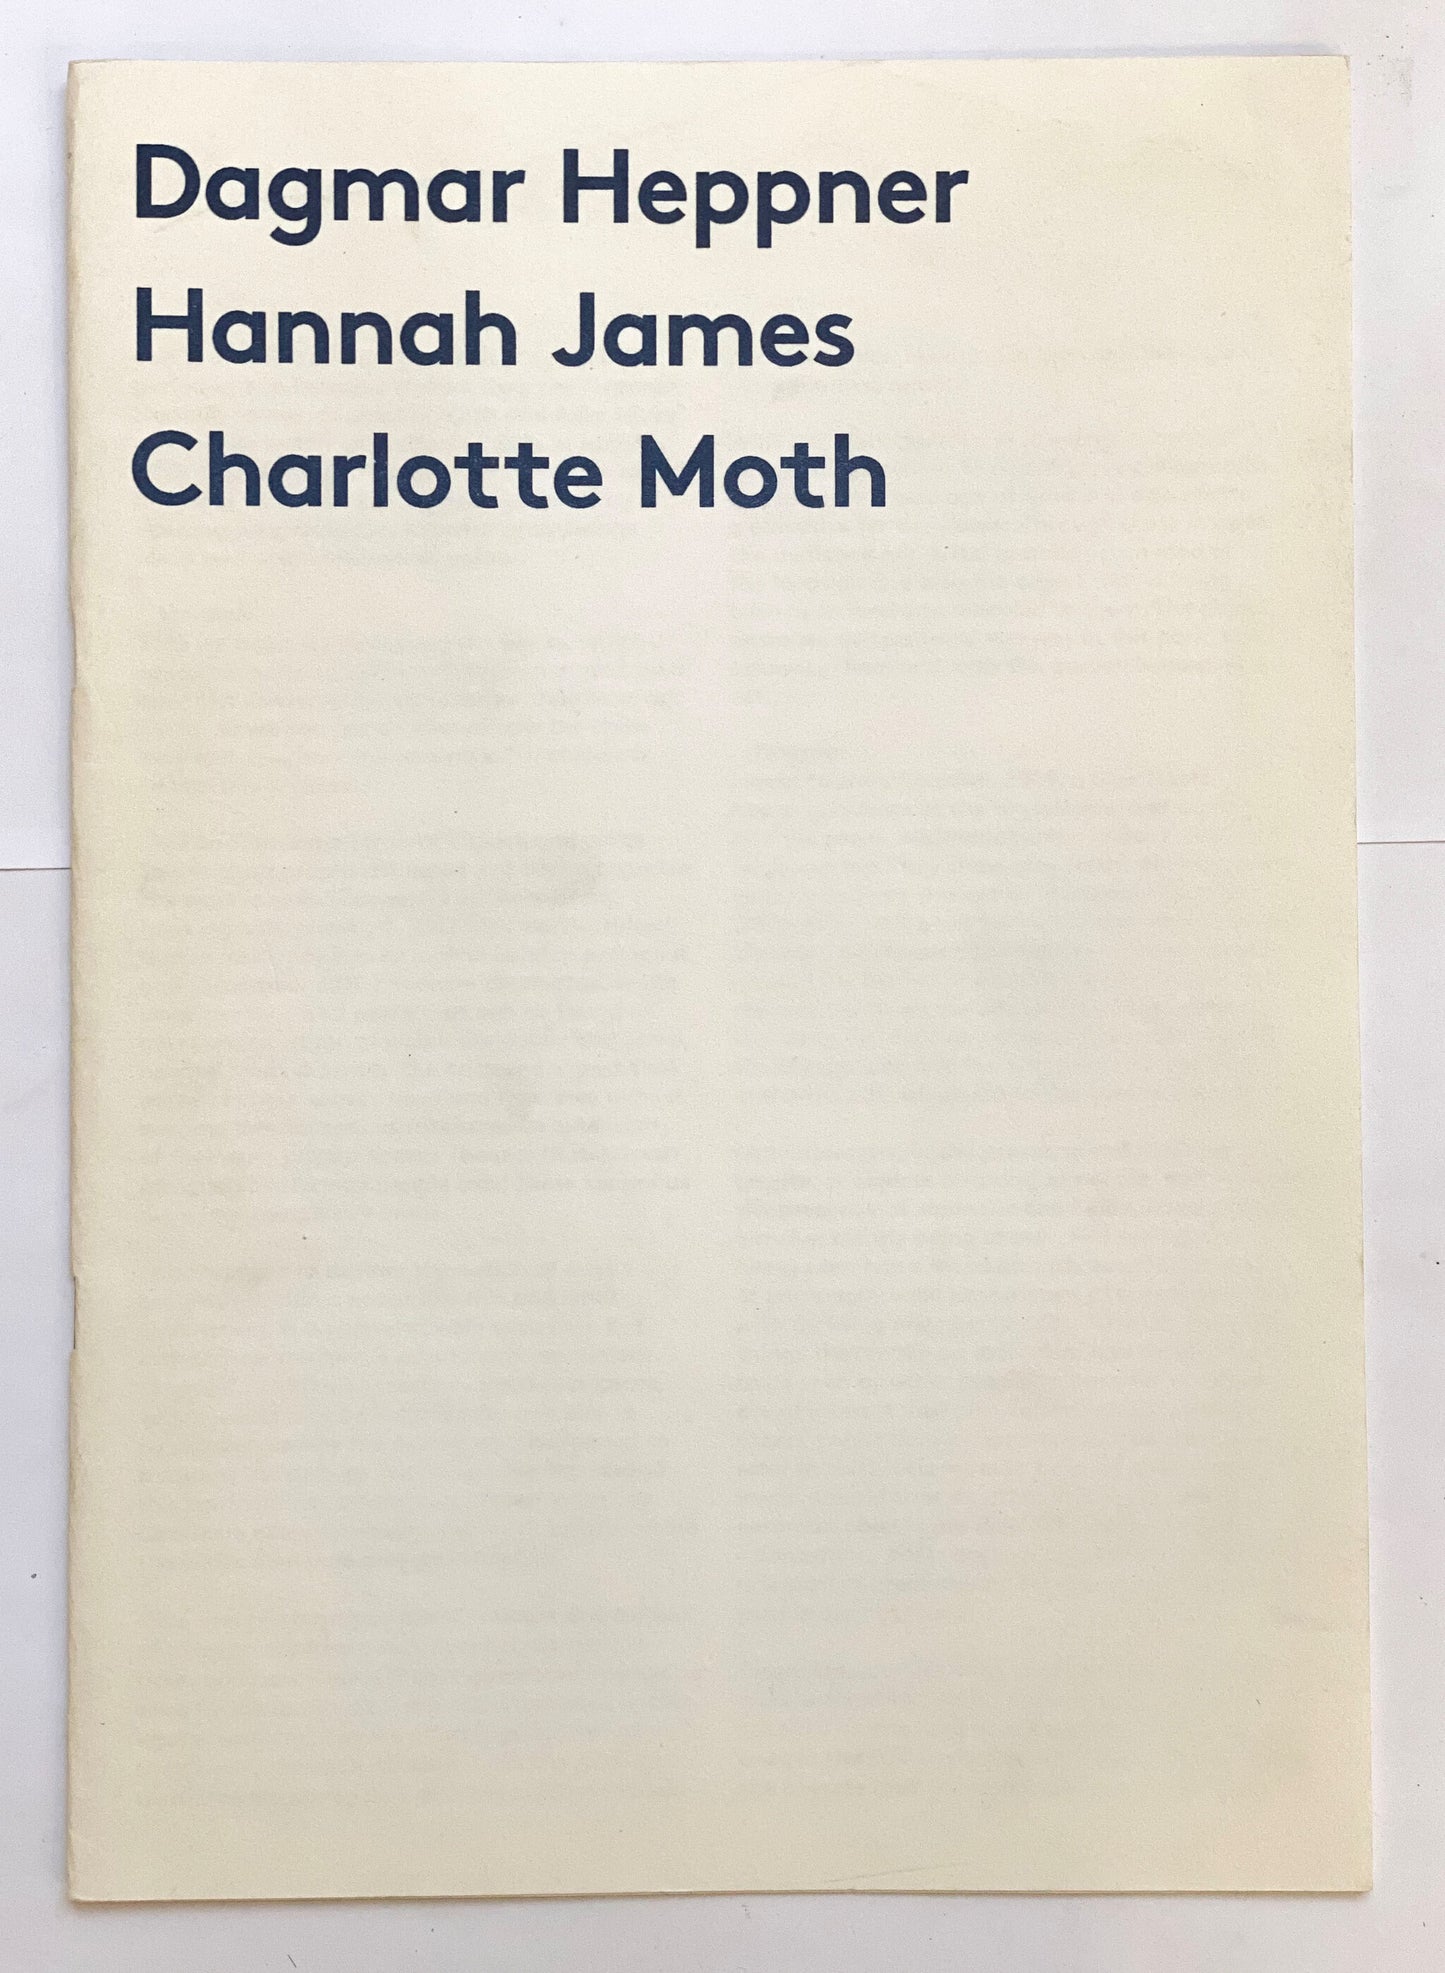 family zine 3/5 - Dagmar Heppner, Hannah James, Charlotte Moth